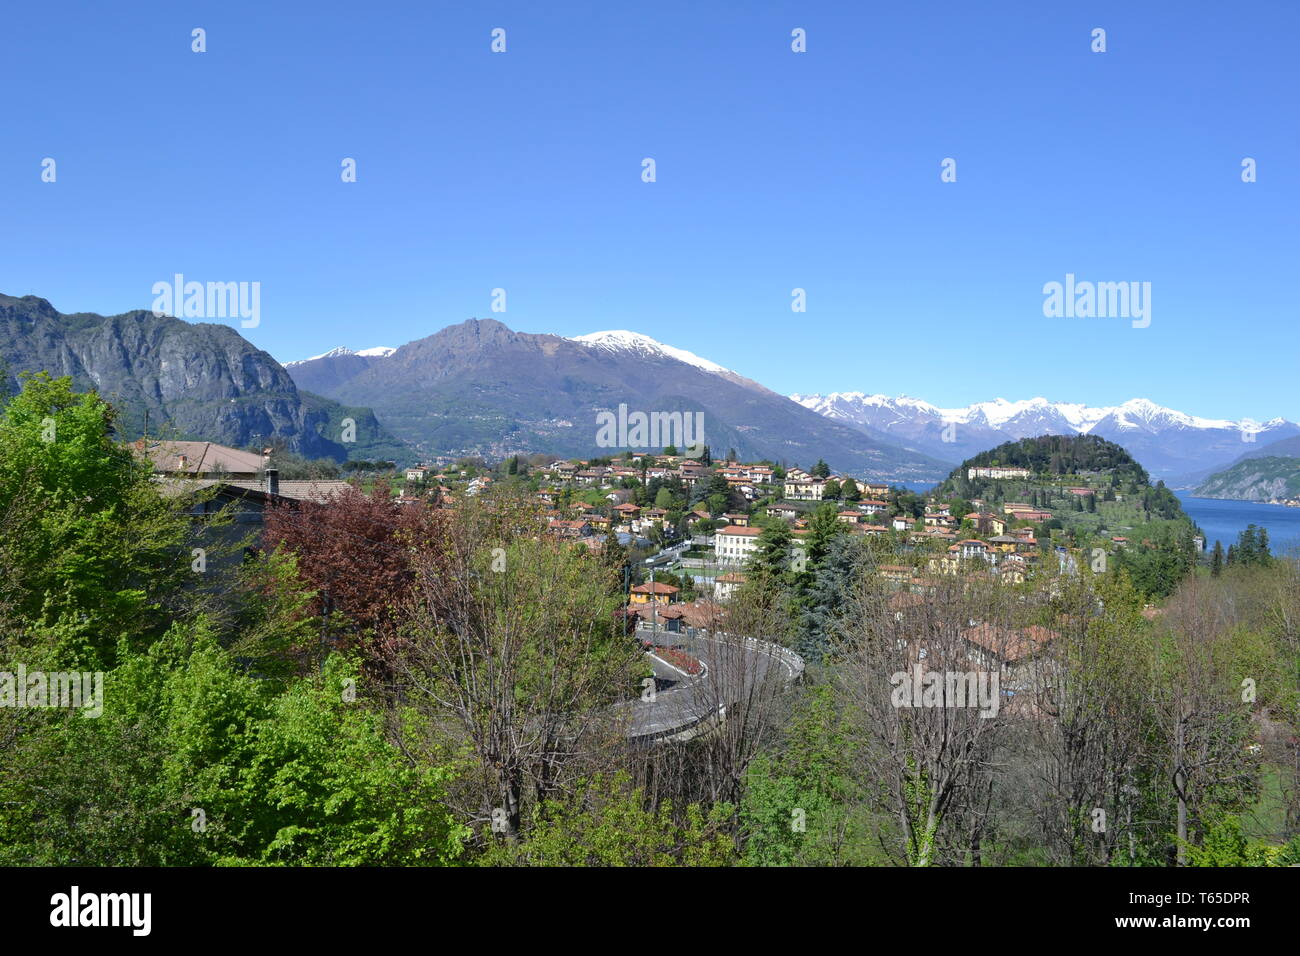 Schöner Frühling Blick auf Bellagio Halbinsel mit einer Stadt, die Europäischen Alpen mit Schnee über Gipfel und den Comer See von der Straße nach Lecco an einem sonnigen Tag. Stockfoto